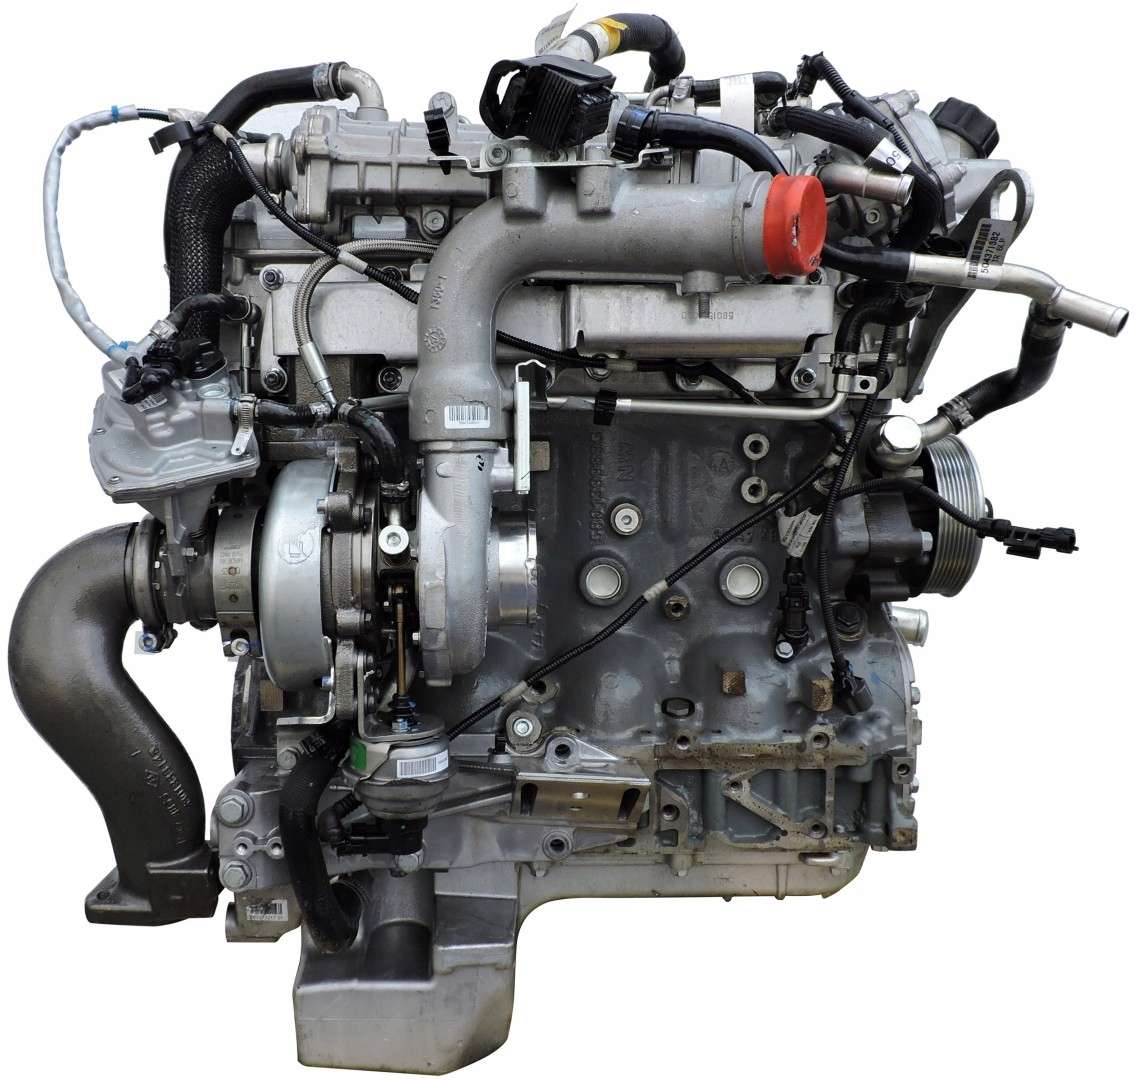 Двигатель mitsubishi fuso. Двигатель Фусо Кантер евро 5. 4p10 двигатель Fuso. Двигатель Фусо кантер4p10. Двигатель Митсубиси Фусо евро 5.